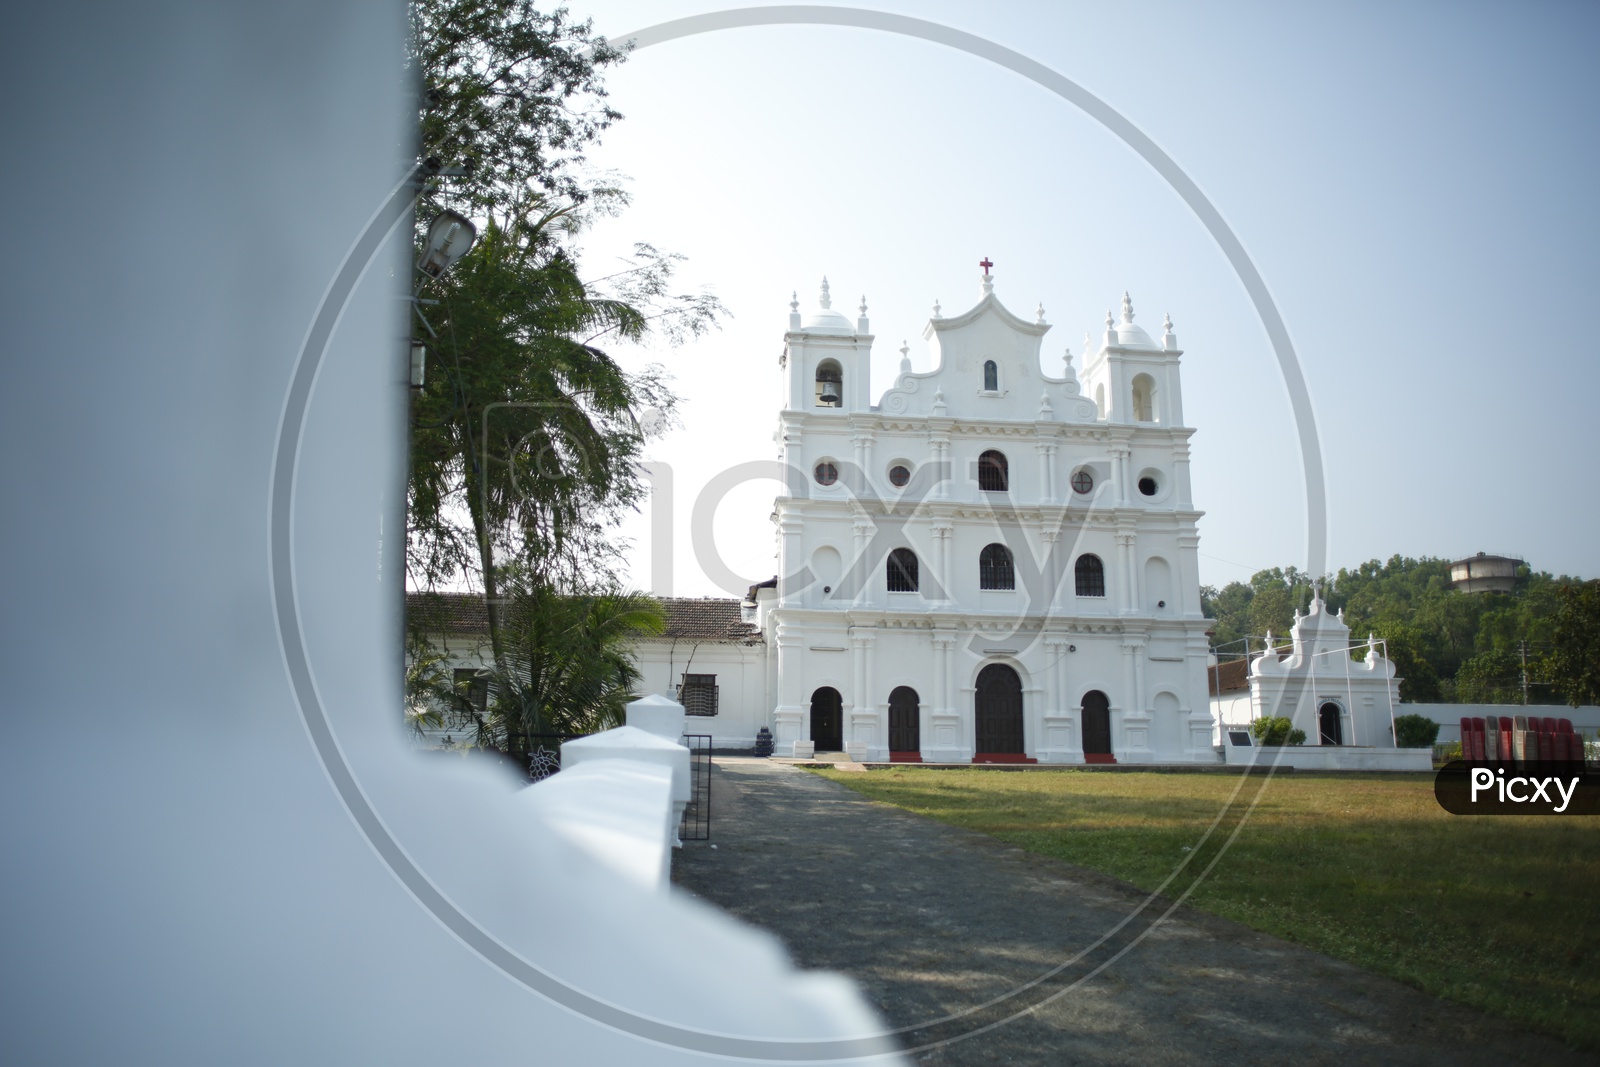 St. Diogo’s Church / Goan Churches / Churches in Goa